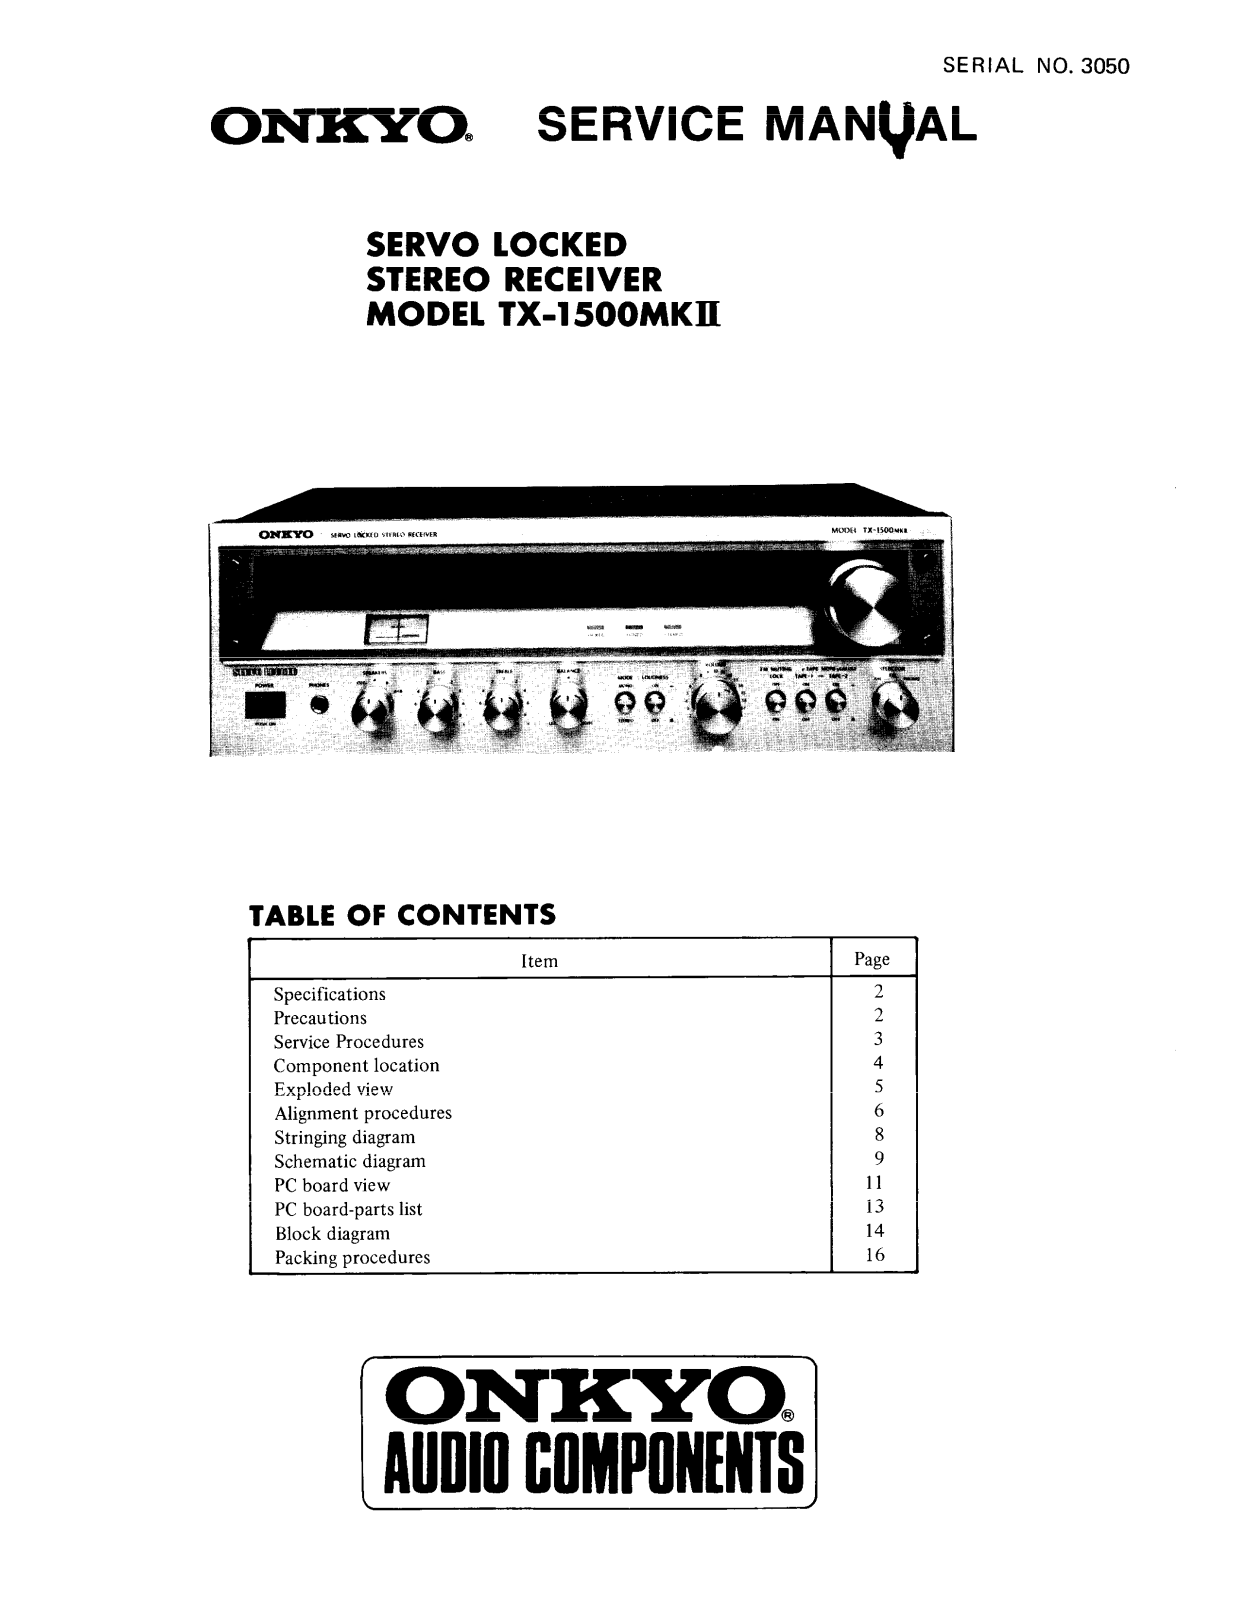 Onkyo TX-1500 Mk2 Service manual